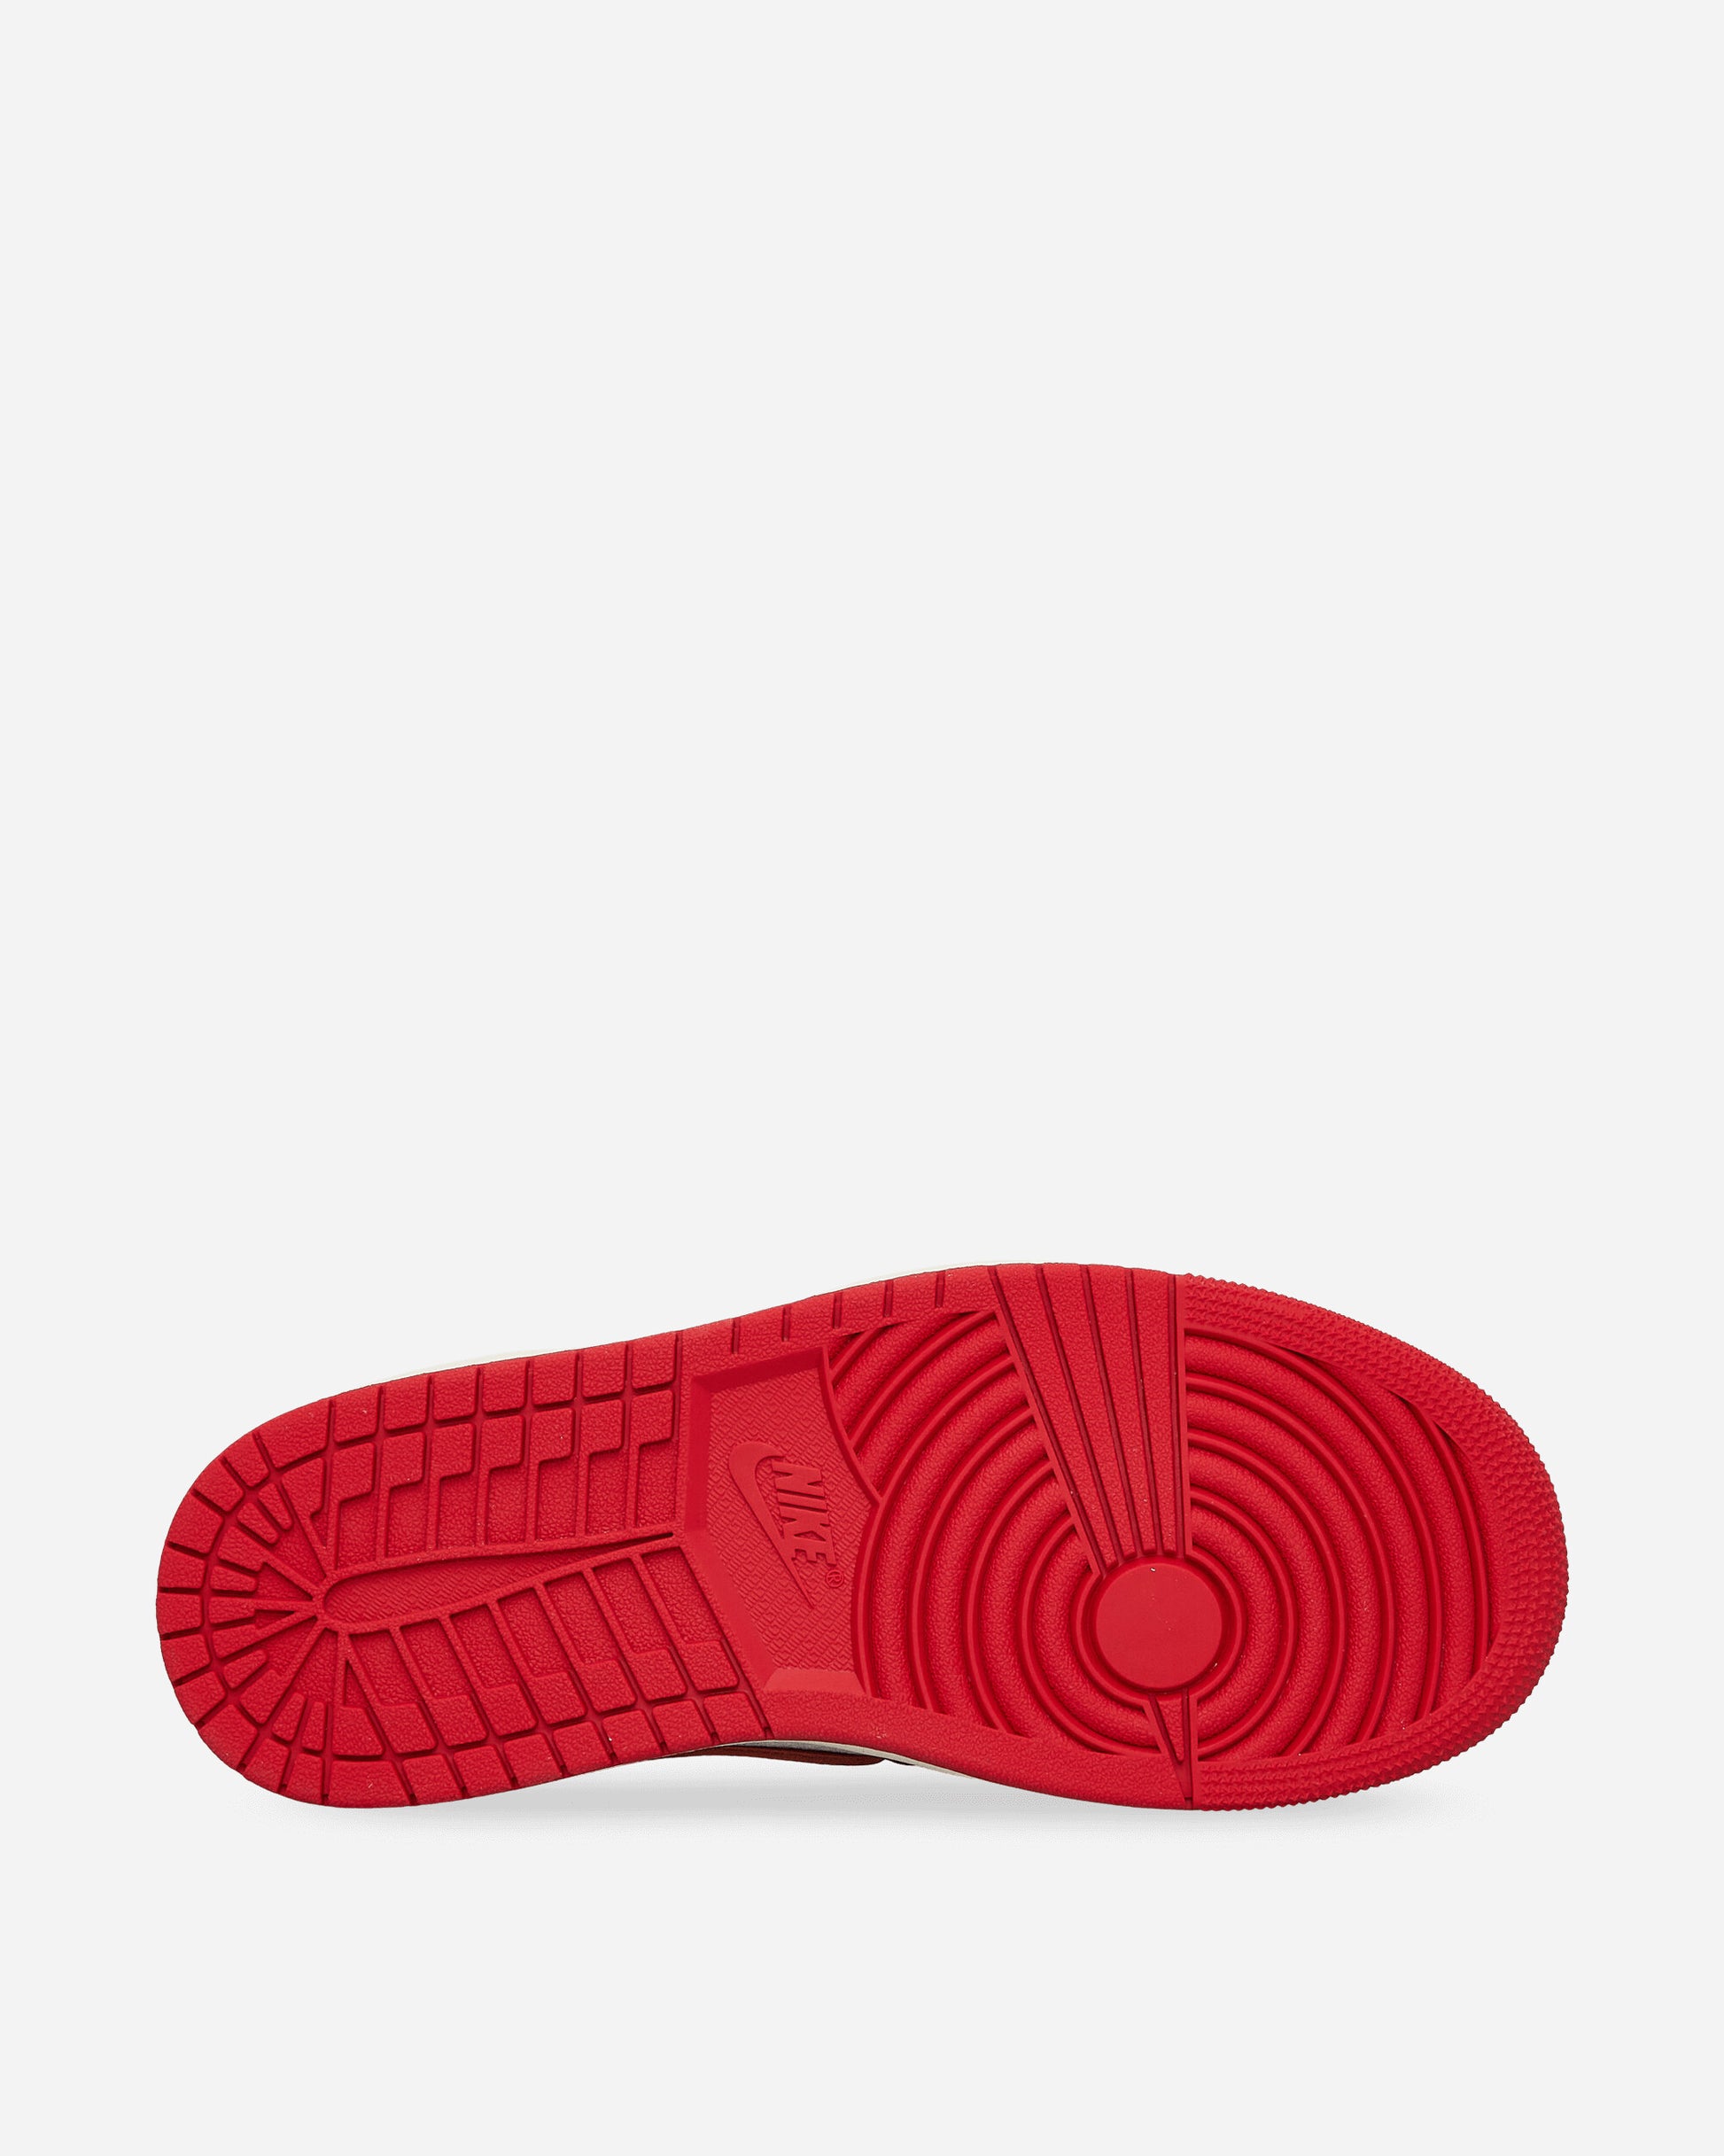 Nike Jordan Wmns Air Jordan 1 Mm High Sport Red/Dune Red Sneakers High FB9891-600